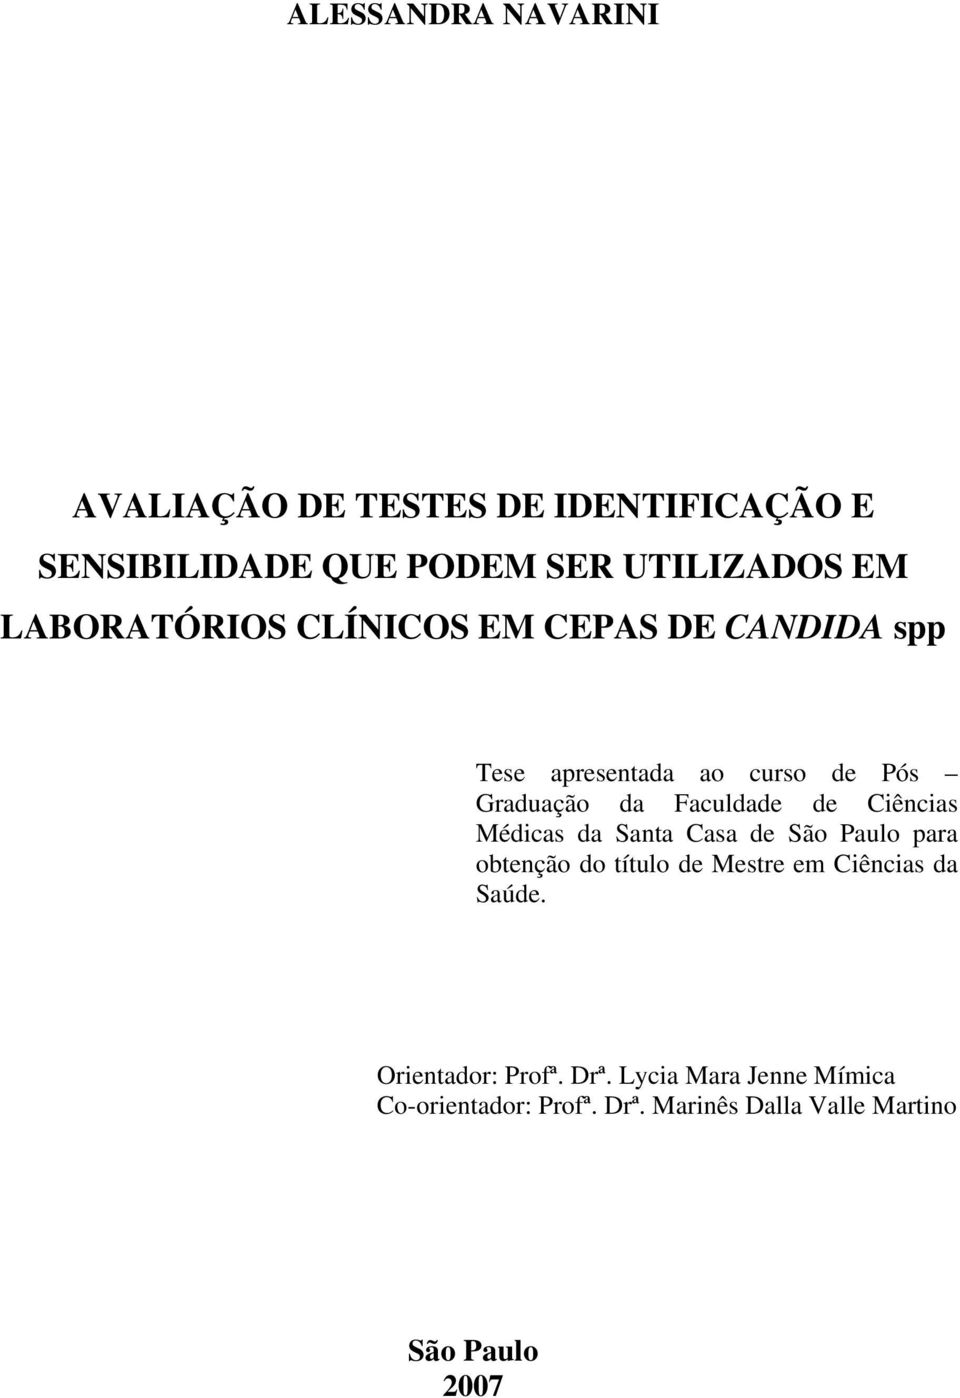 Médicas da Santa Casa de São Paulo para obtenção do título de Mestre em Ciências da Saúde.